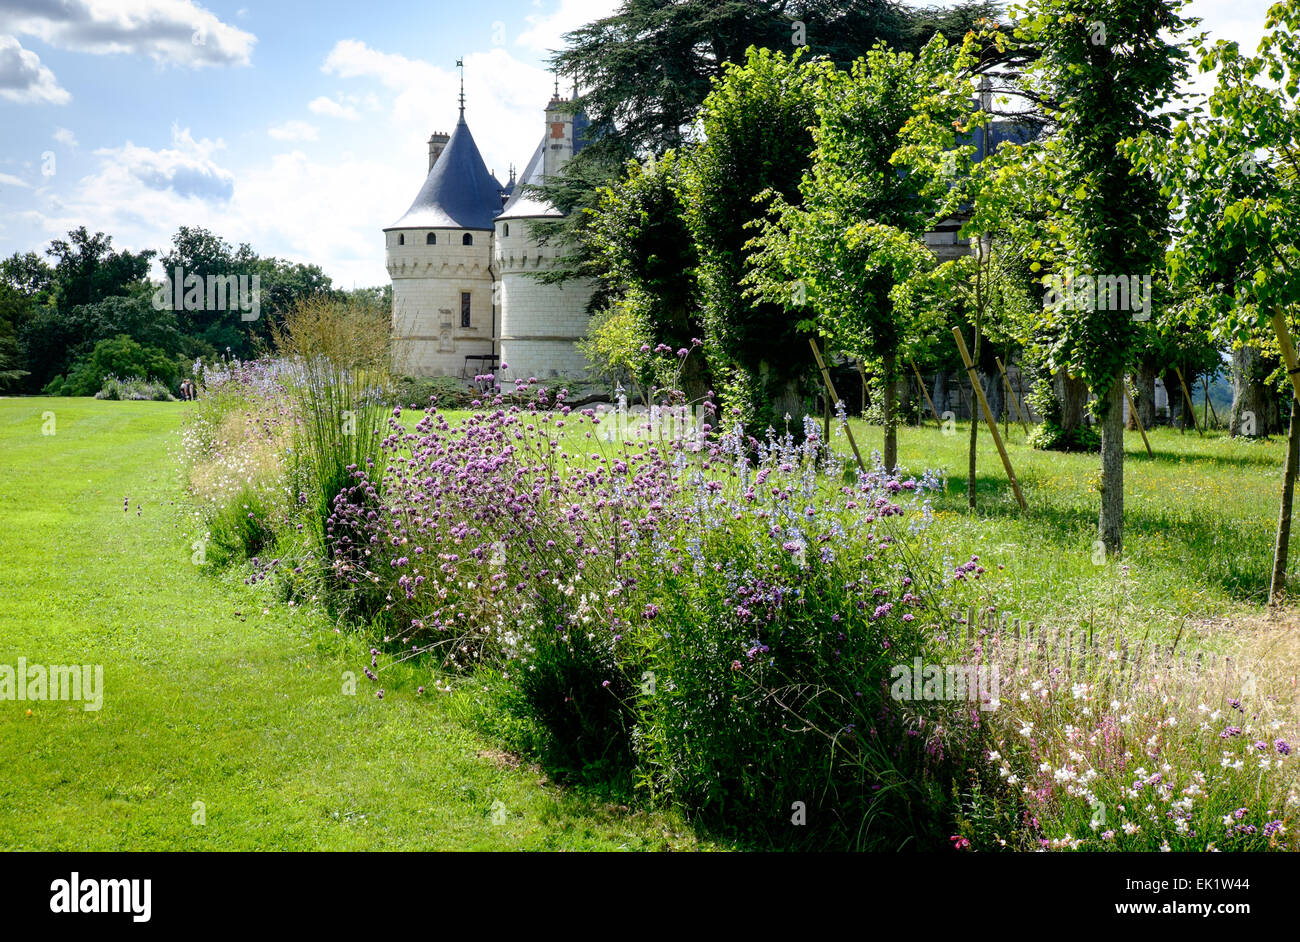 Chaumont Castle, Chaumont-sur-Loire, Loire valley, France Stock Photo